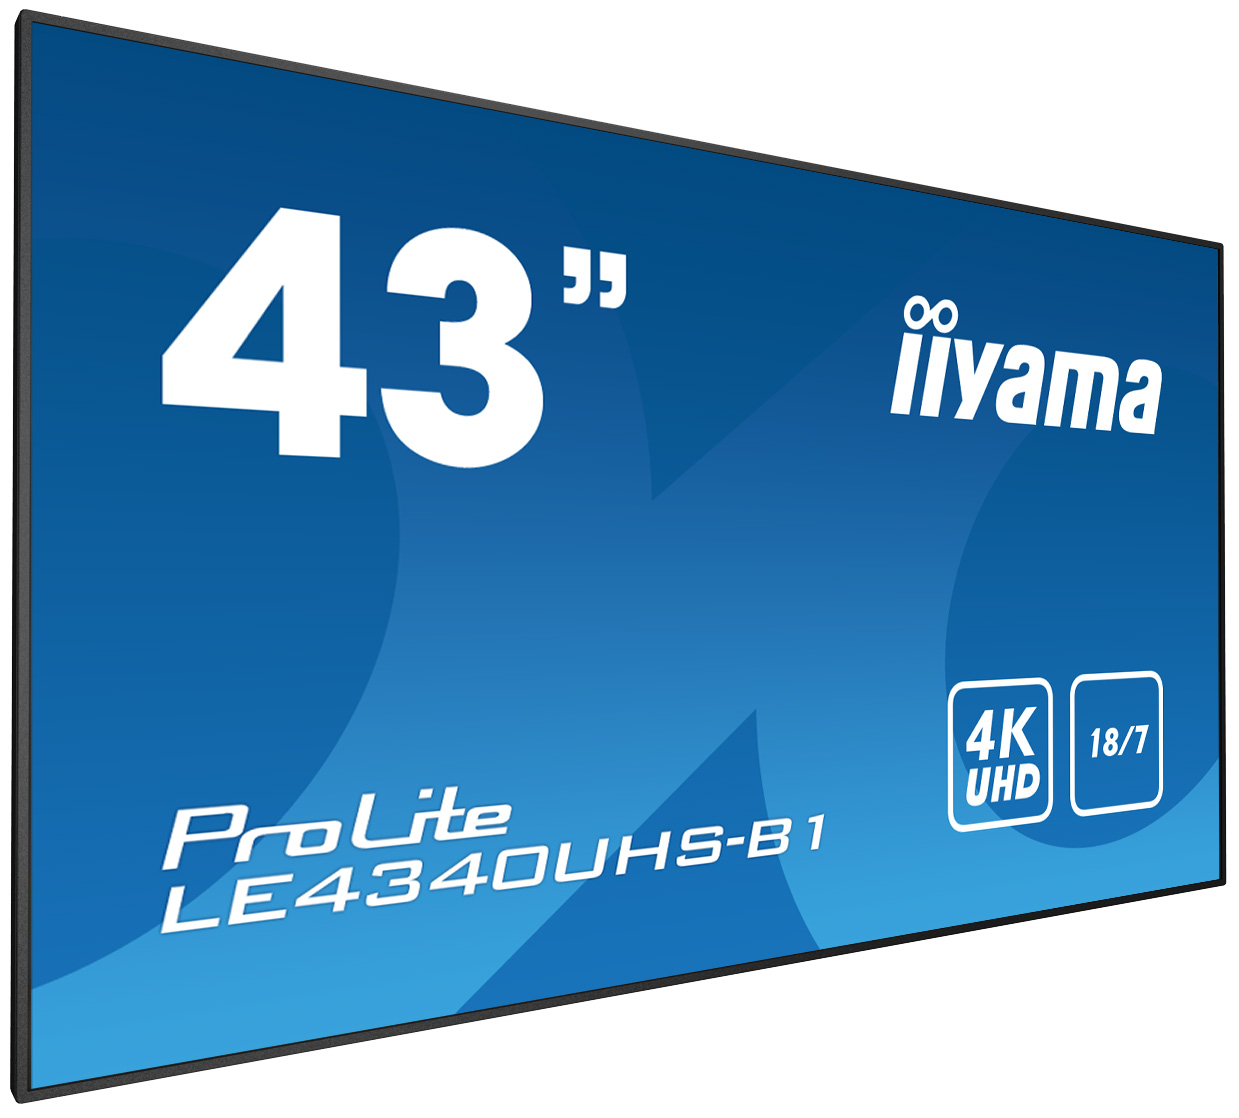 Iiyama ProLite LE4340UHS-B1 | 42,5" (107,9cm) | 18/7 Betriebszeit und 4K-Grafik